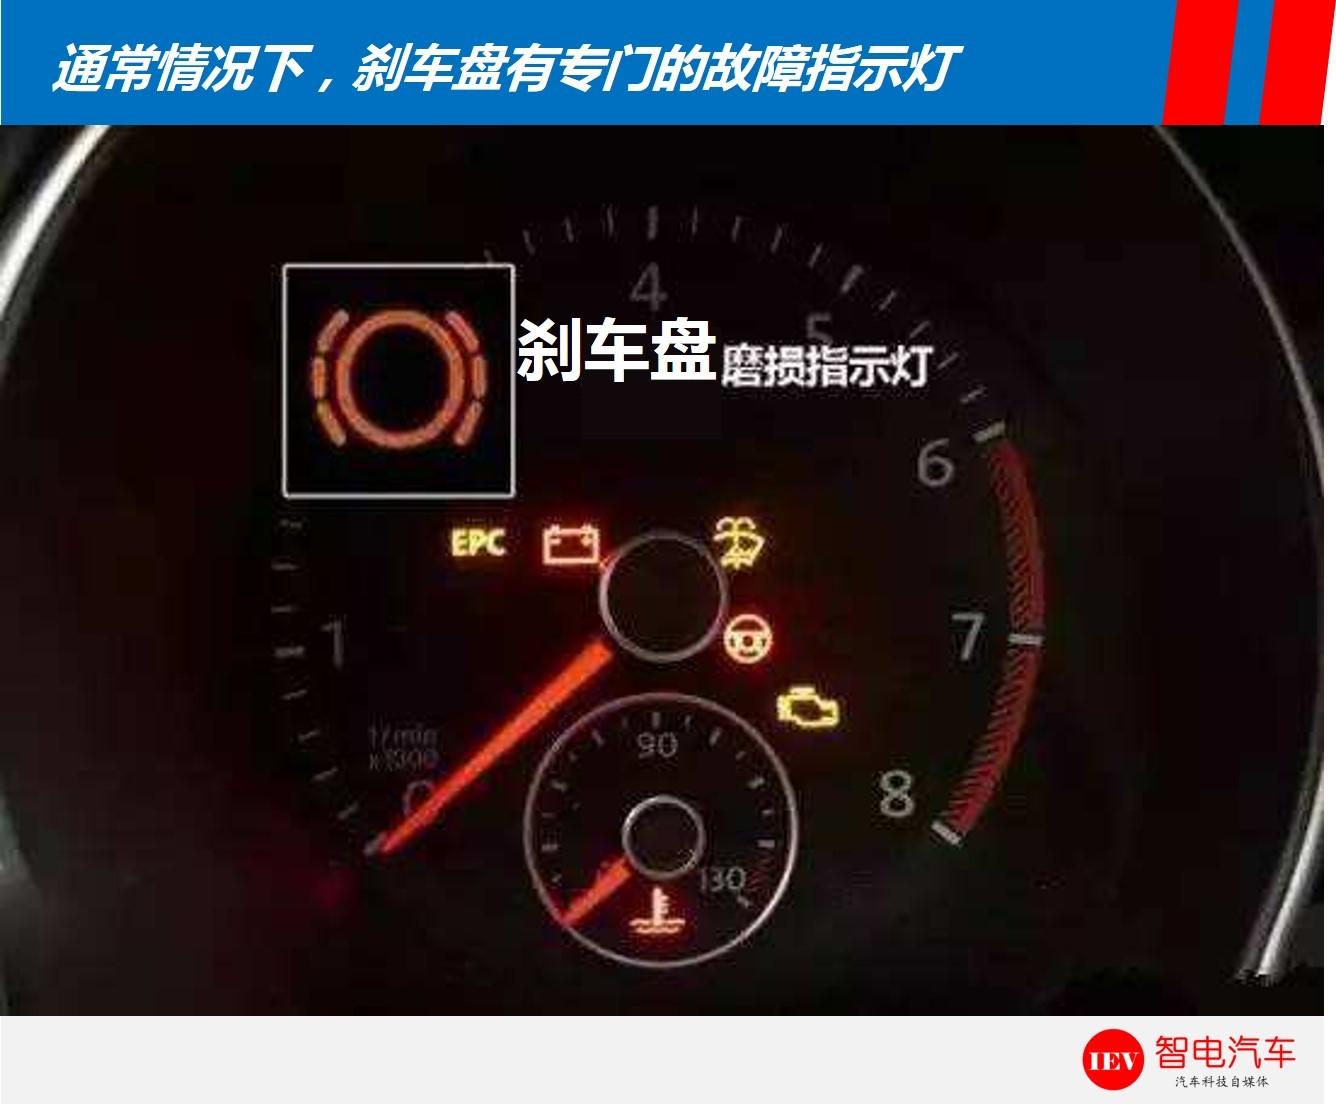 简洁的方法是看仪表盘的刹车故障灯,如果刹车盘到了极限,通常会报警